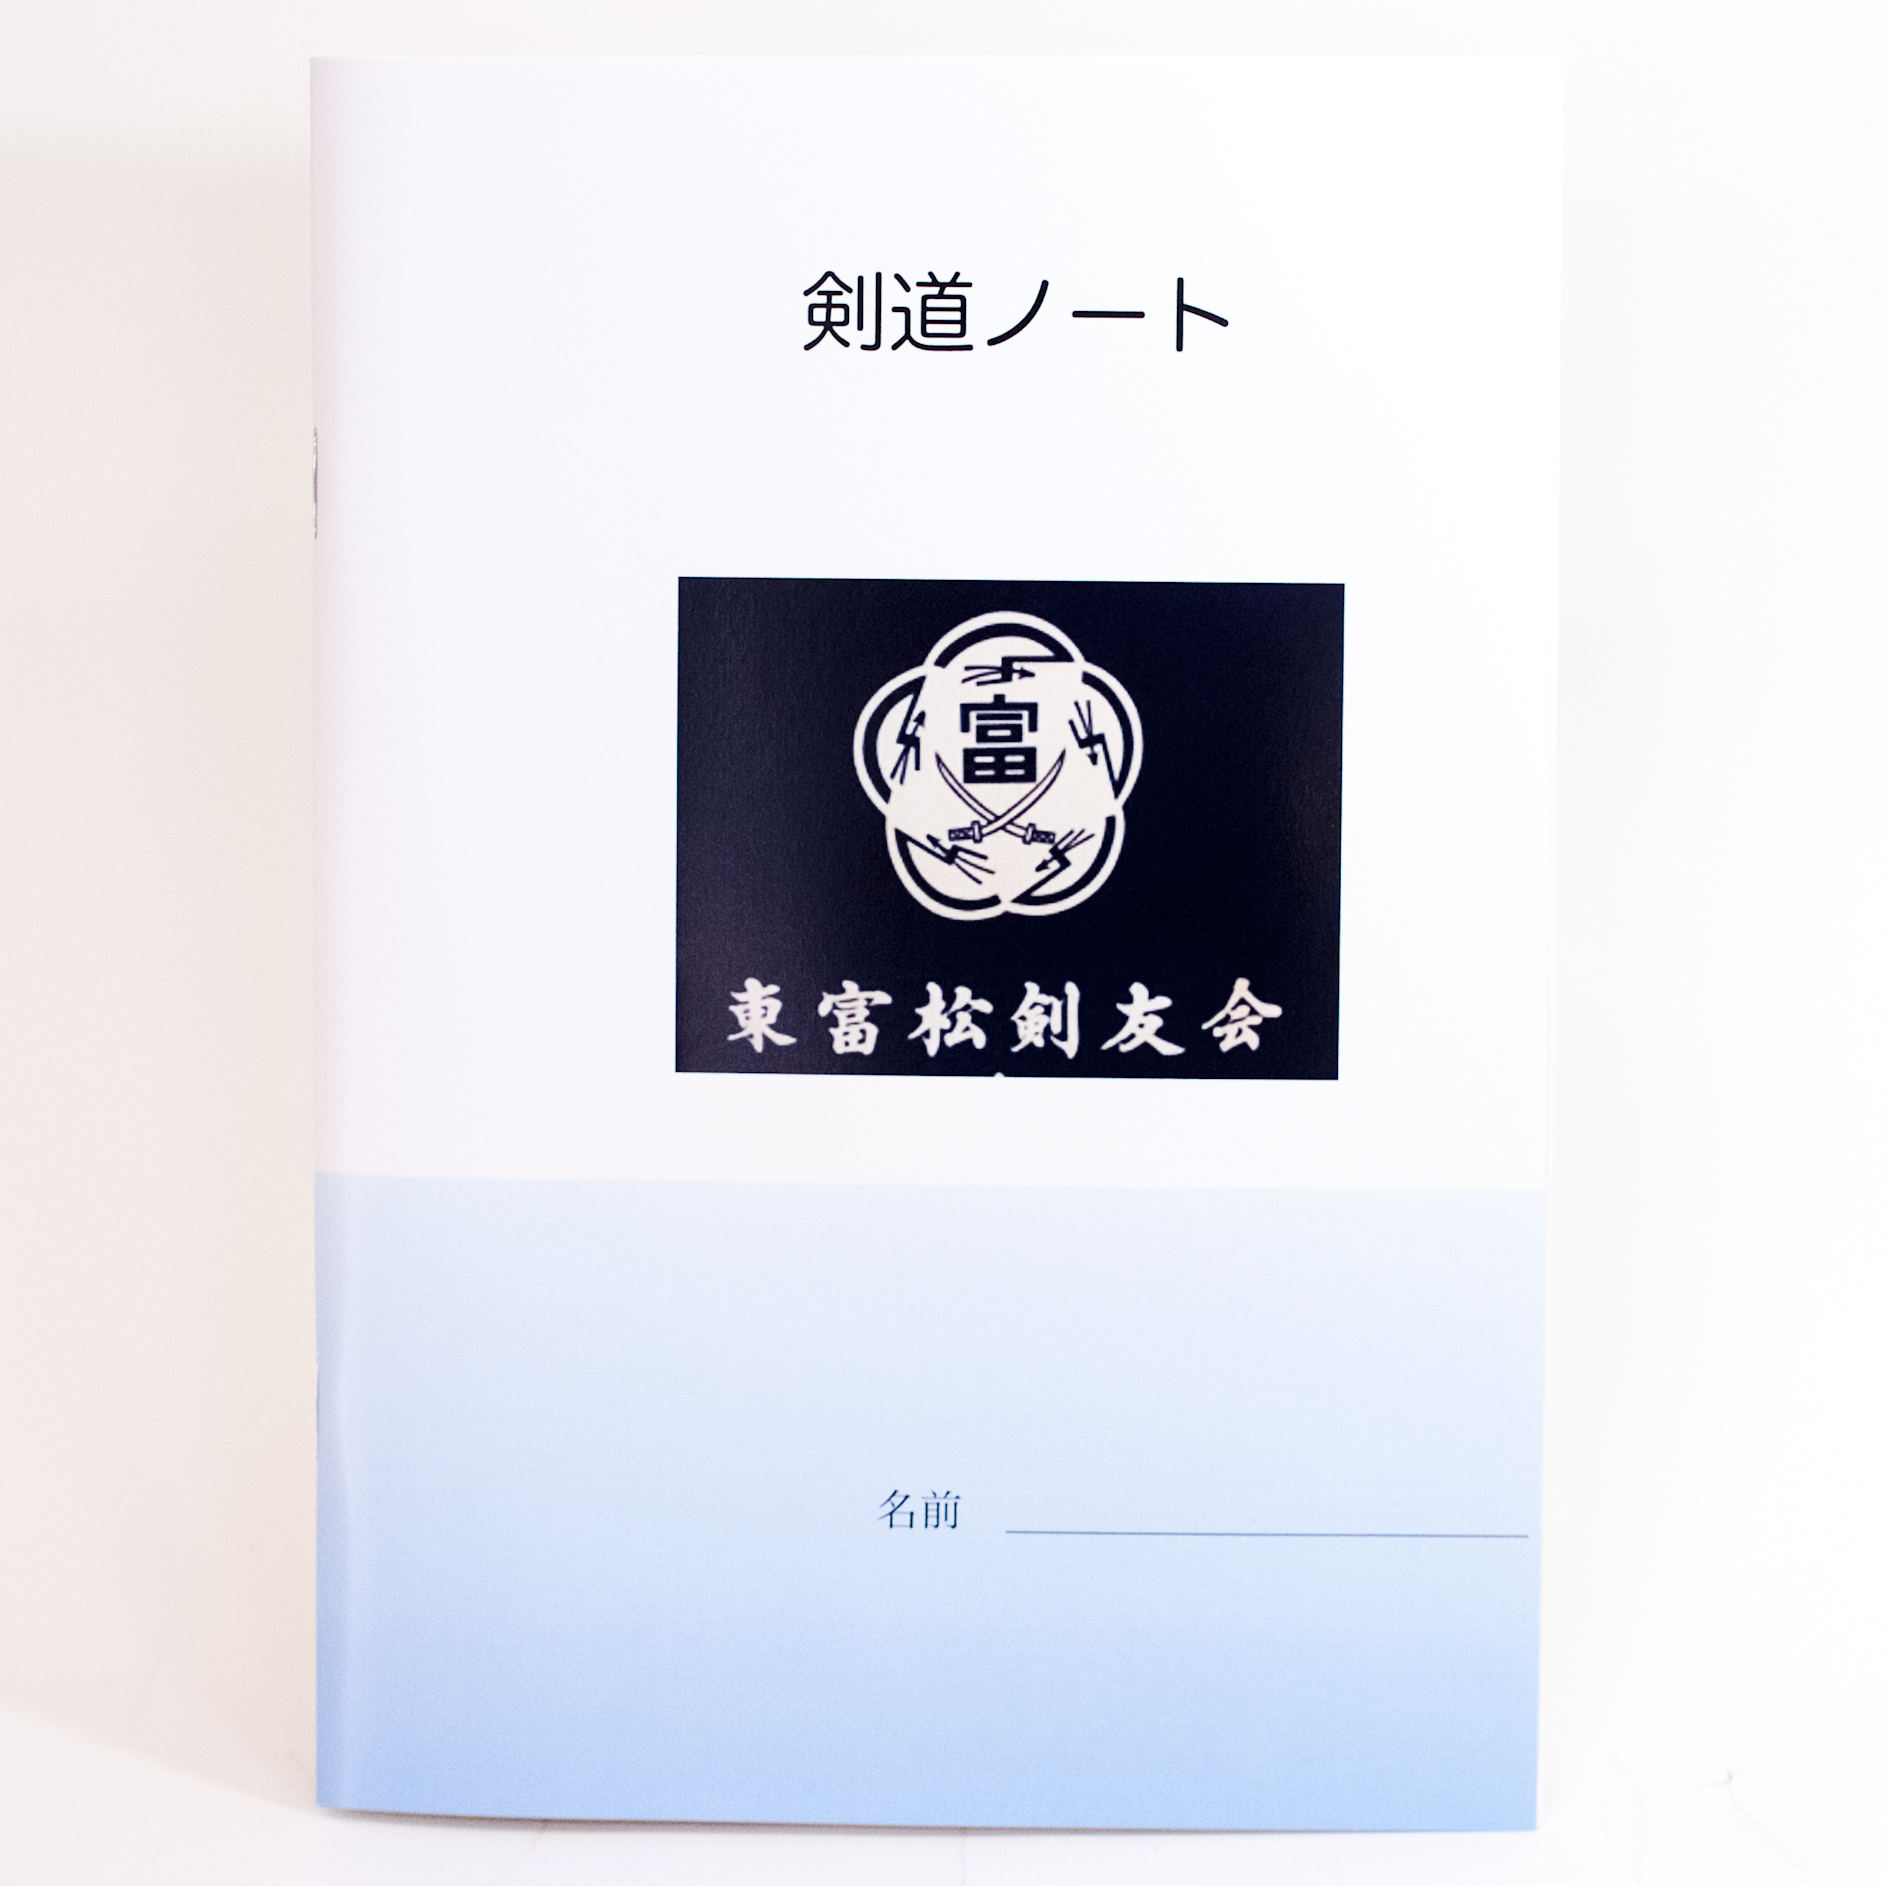 「山田　博昭 様」製作のオリジナルノート